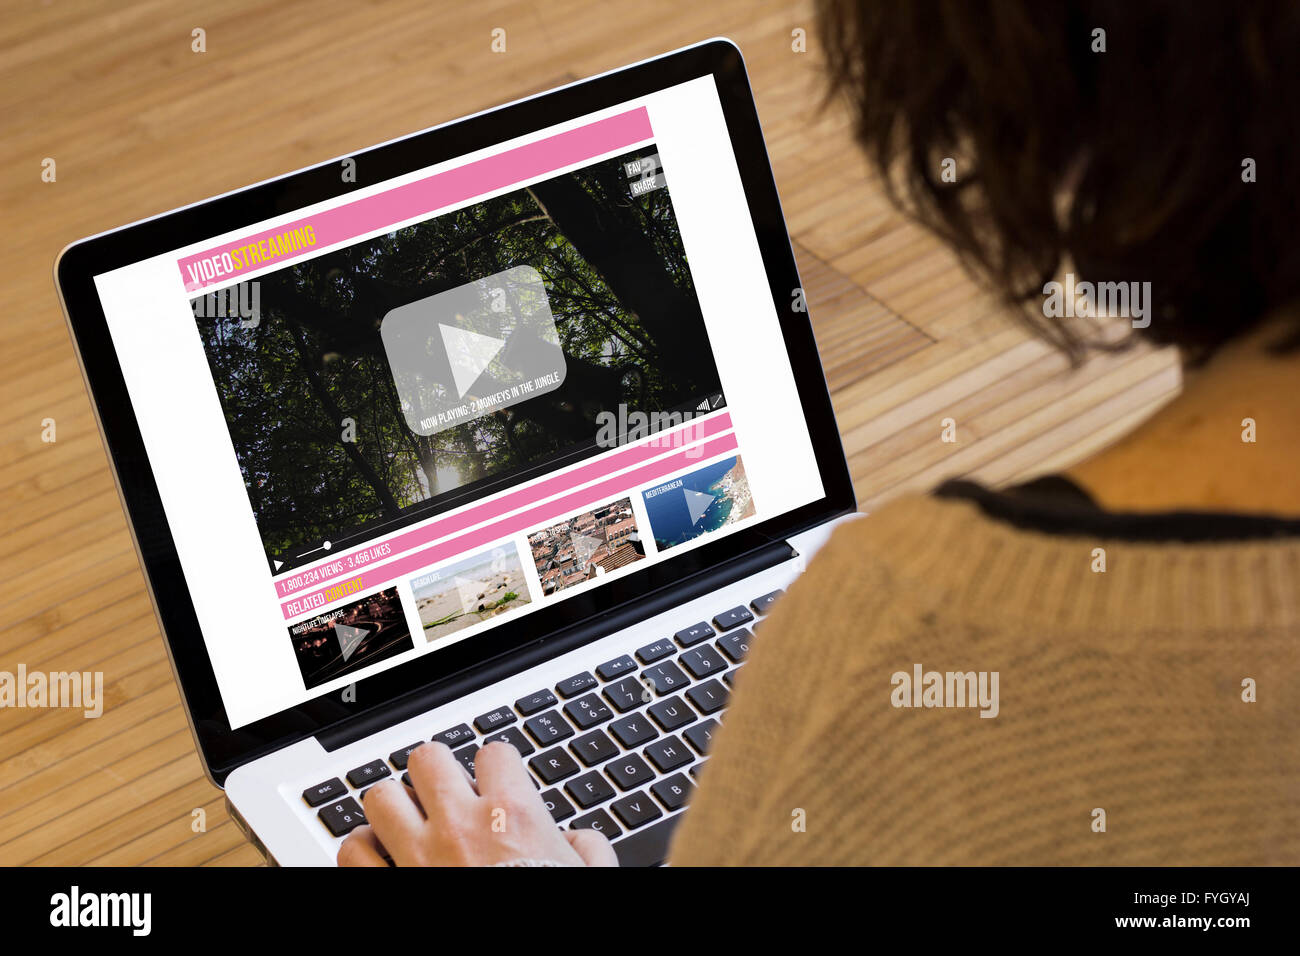 Video streaming concetto: tubo sito web su uno schermo portatile. Grafici dello schermo sono costituiti. Foto Stock